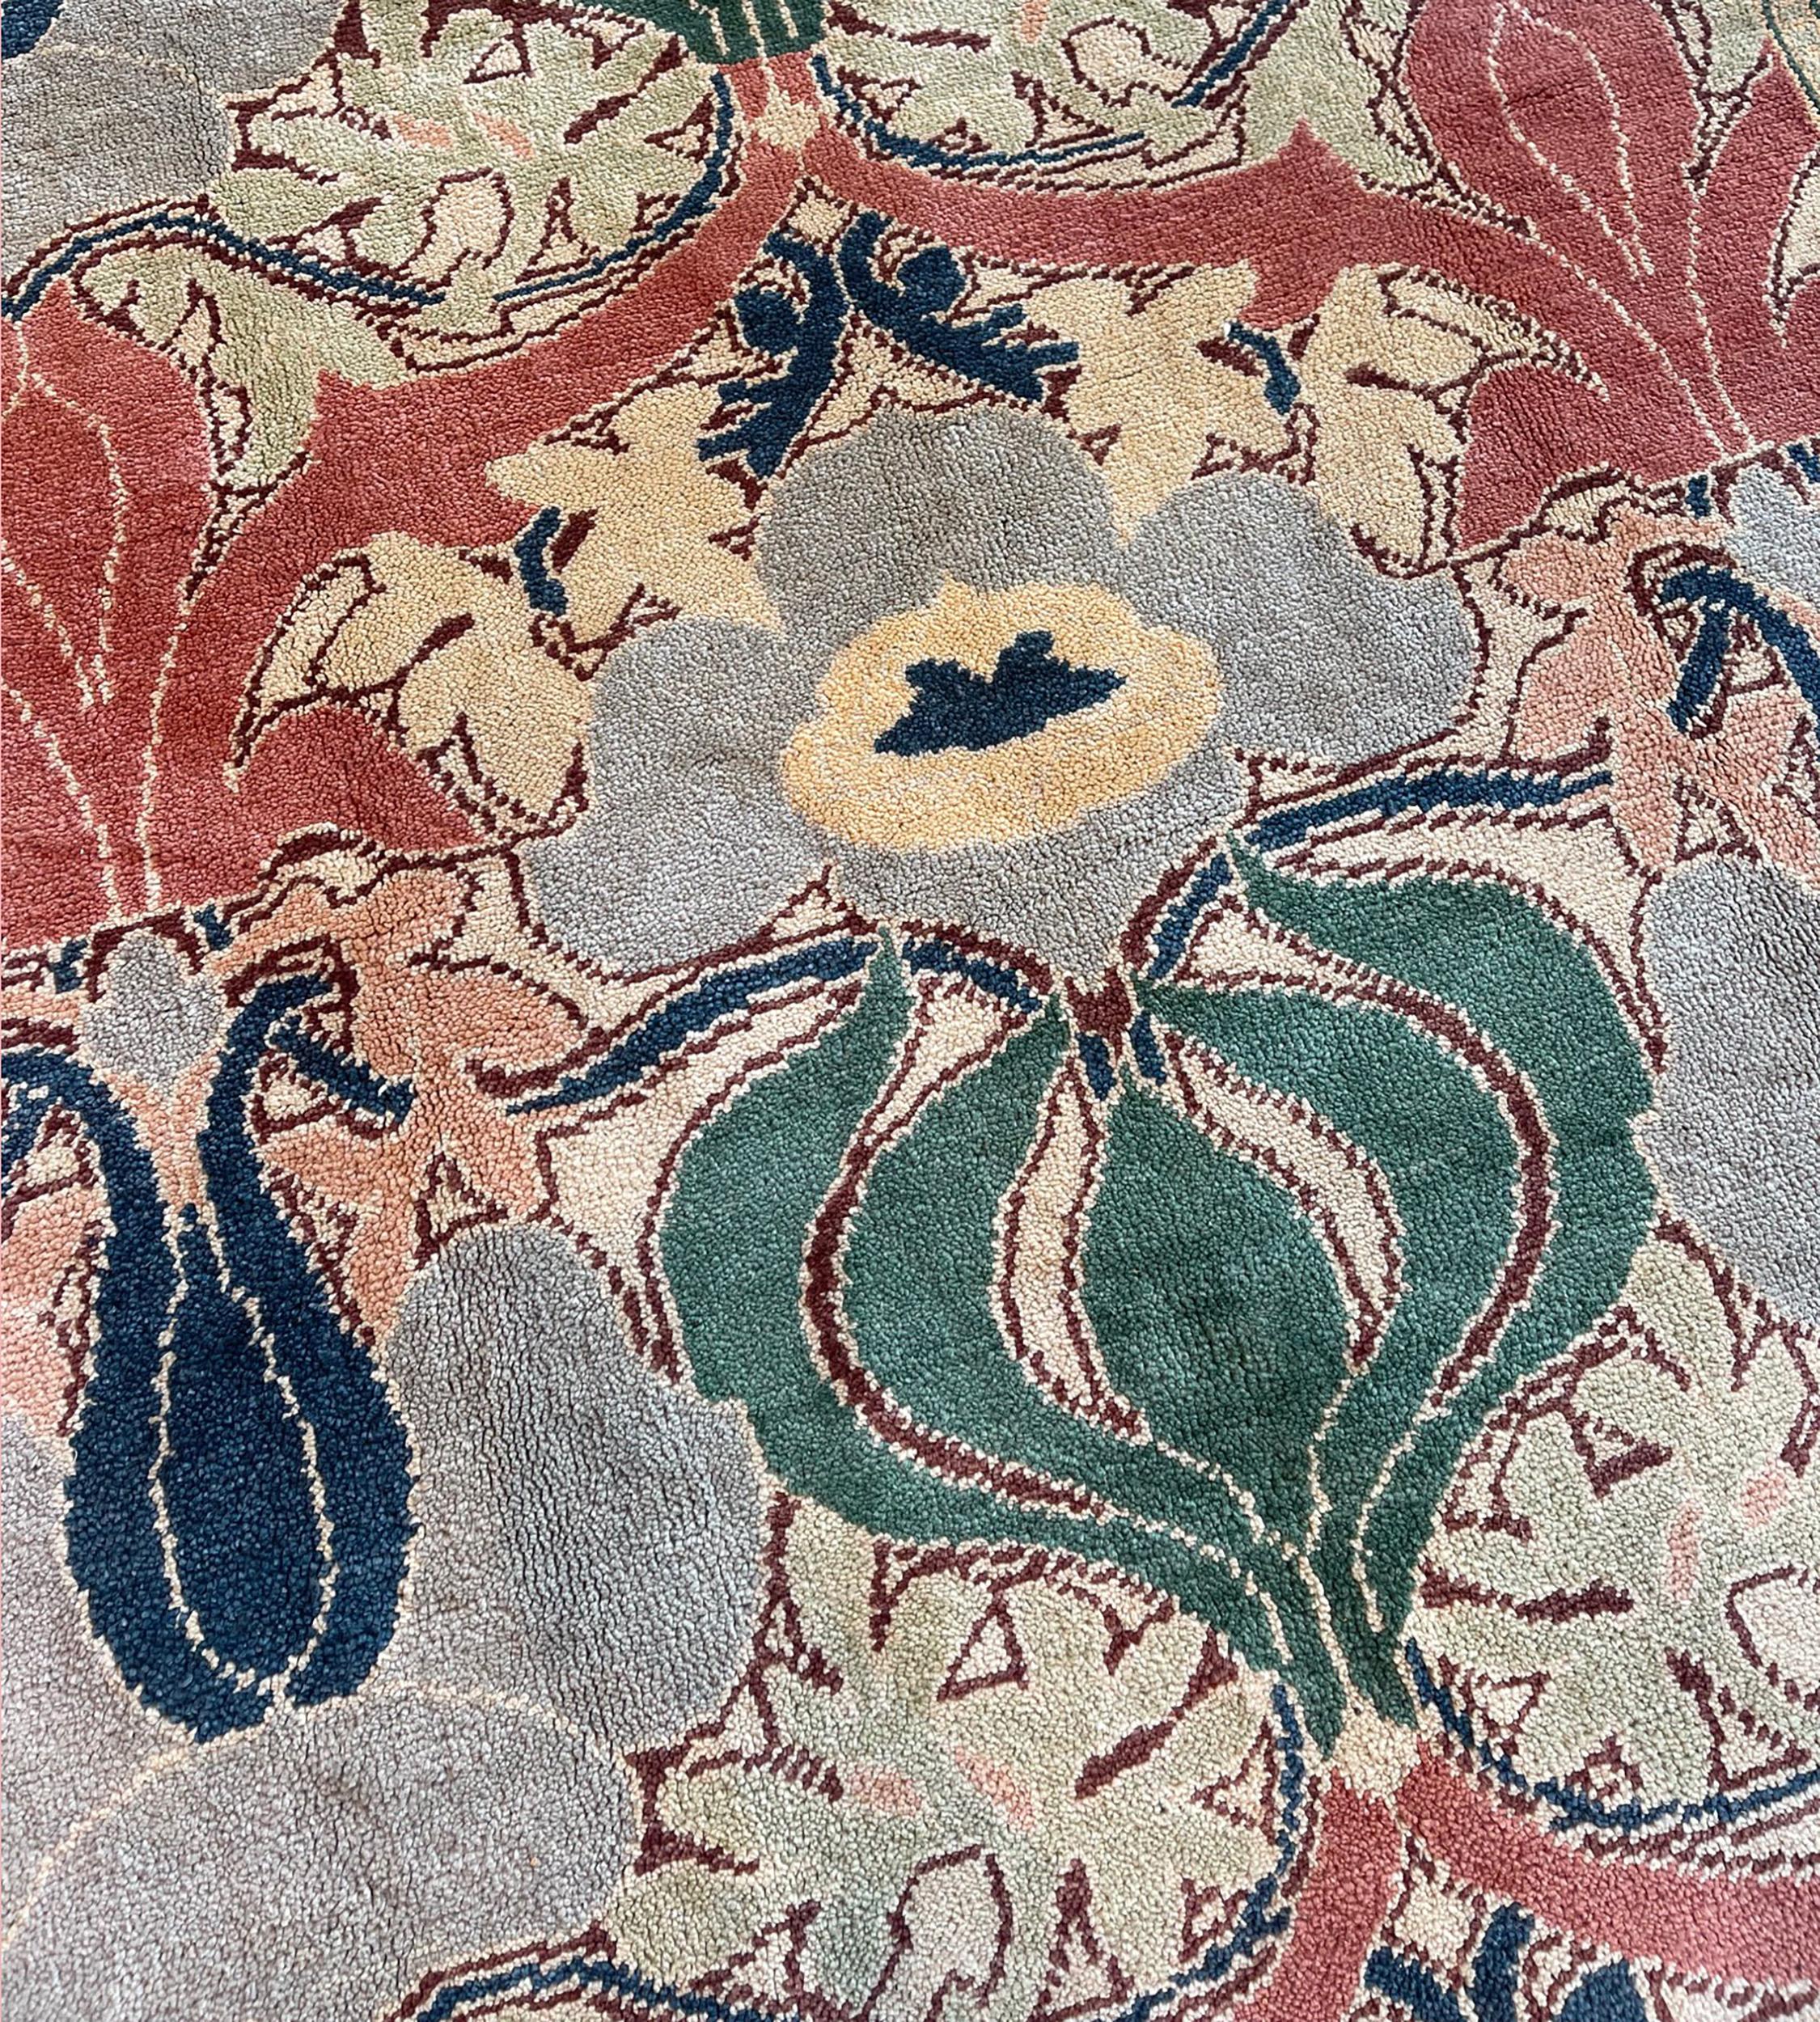 Dieser handgewebte Teppich ist nach einem Arts & Crafts William Morris Design gemustert und zeigt ein Feldmuster mit einer zentralen Terrakotta-Ranke, die kühne stilisierte tiefgrüne Zwiebeln hervorbringt, flankiert von Flora und Ranken in einer